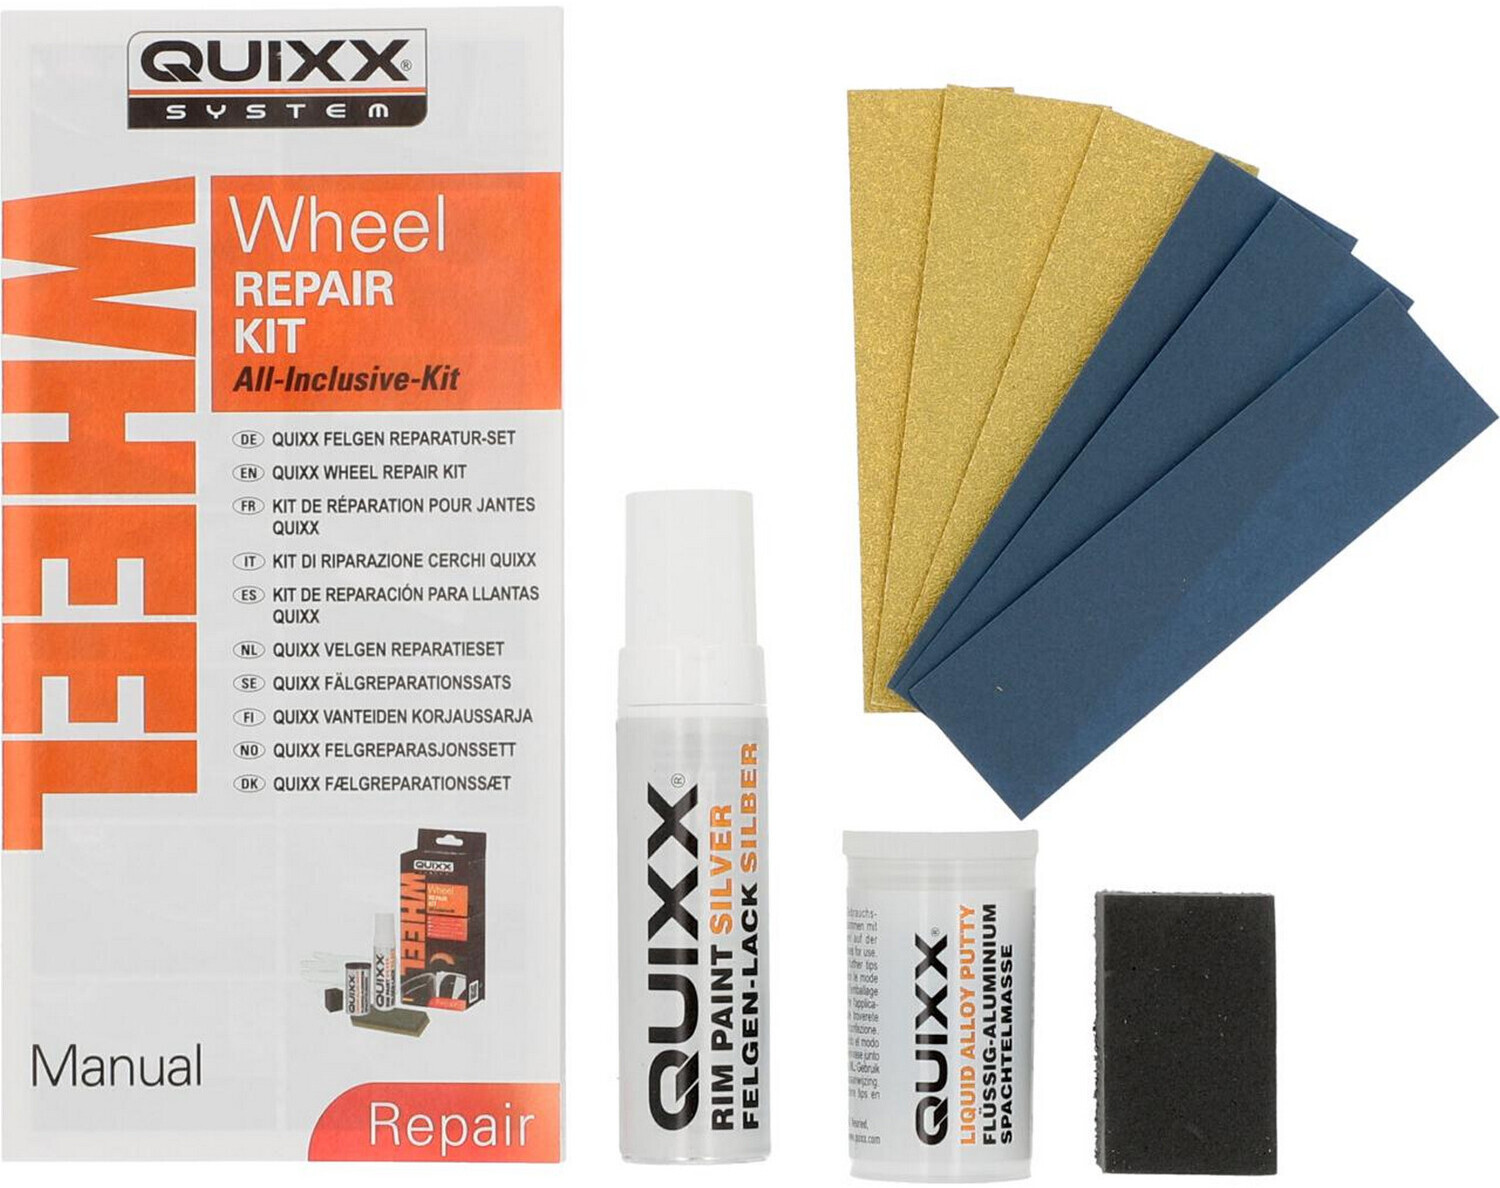 Quixx Felgen Reparatur-Set (20446) ab 14,02 €